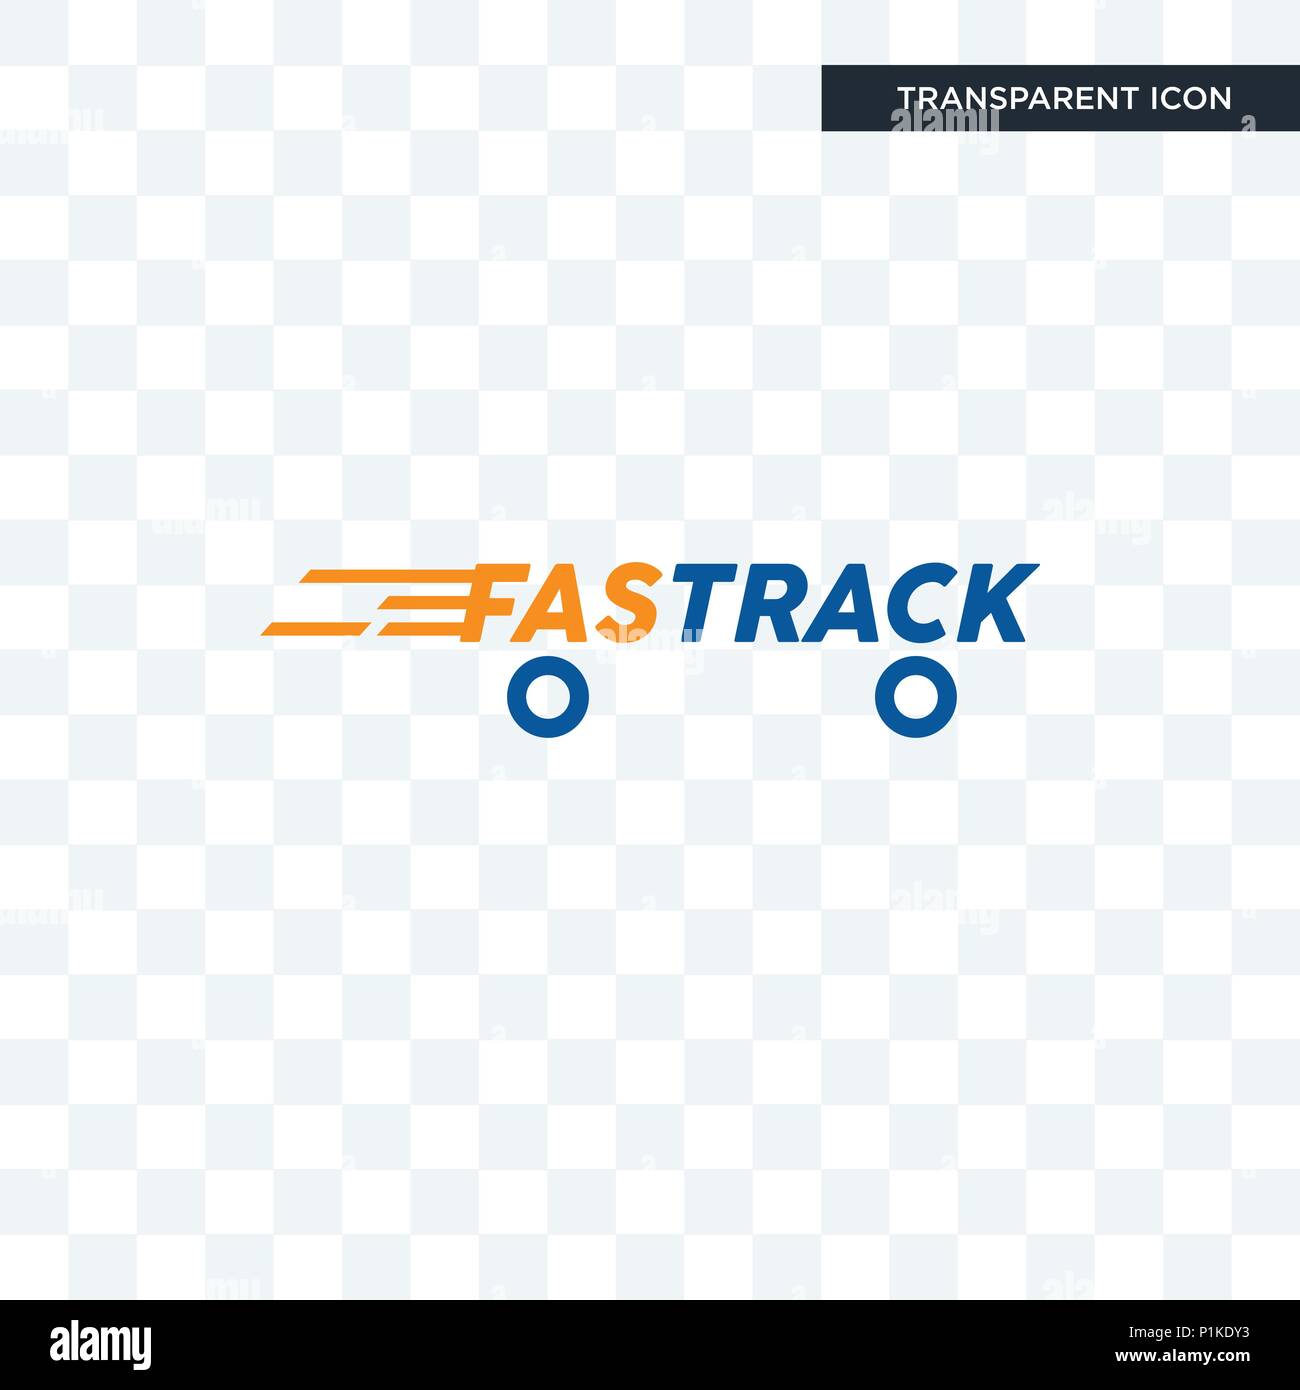 Details 120+ fast track logo